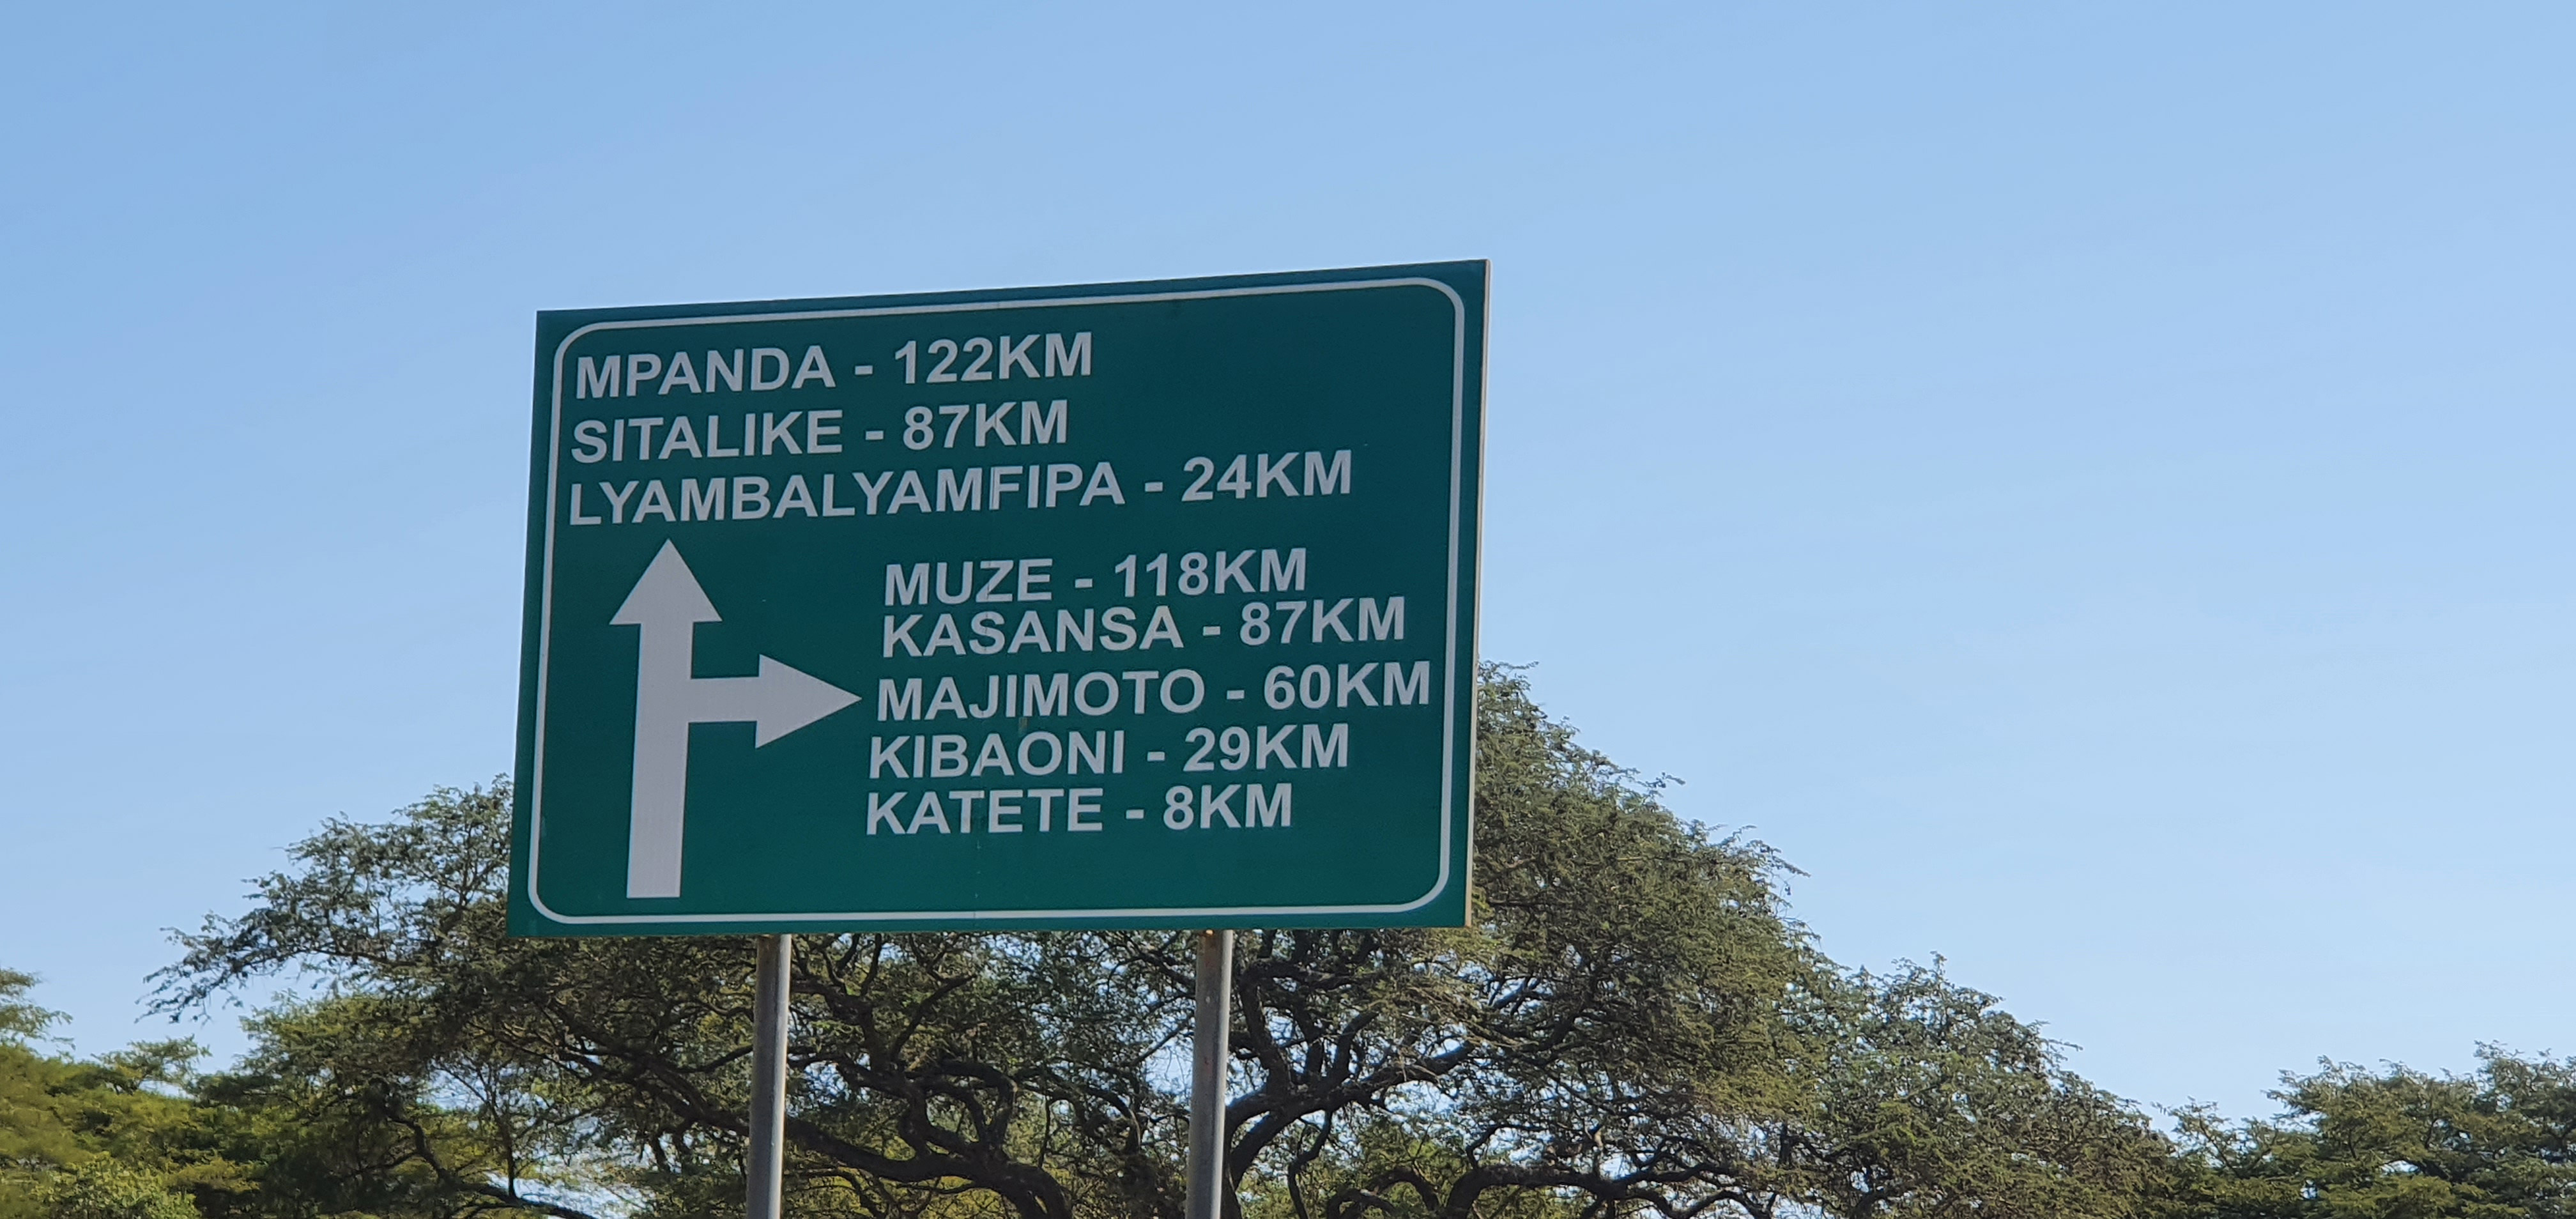 Tanzania road sign